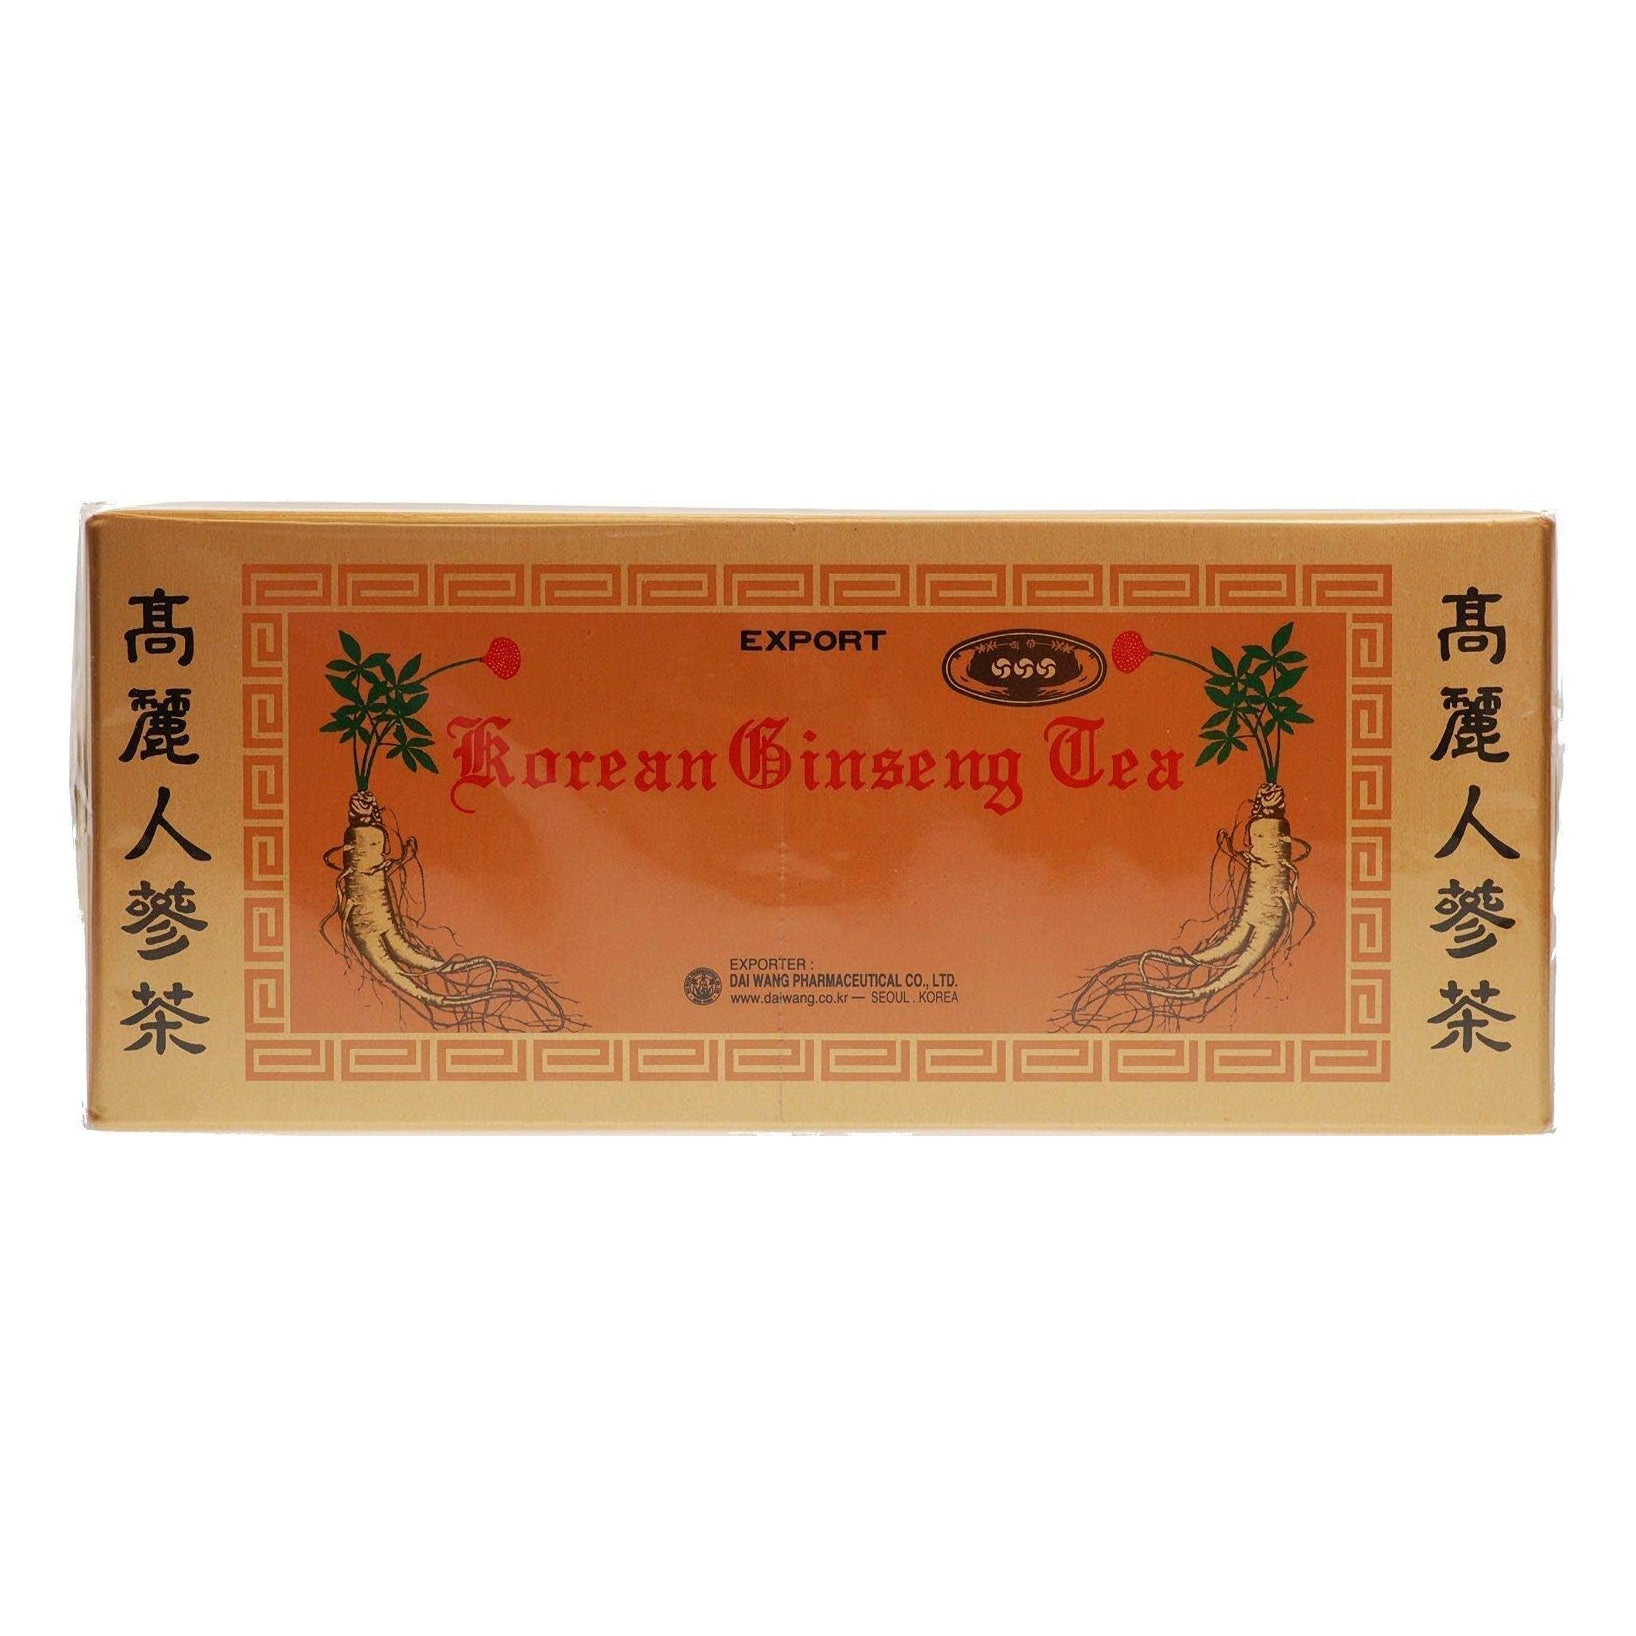 Ginseng Tea 42 sachets